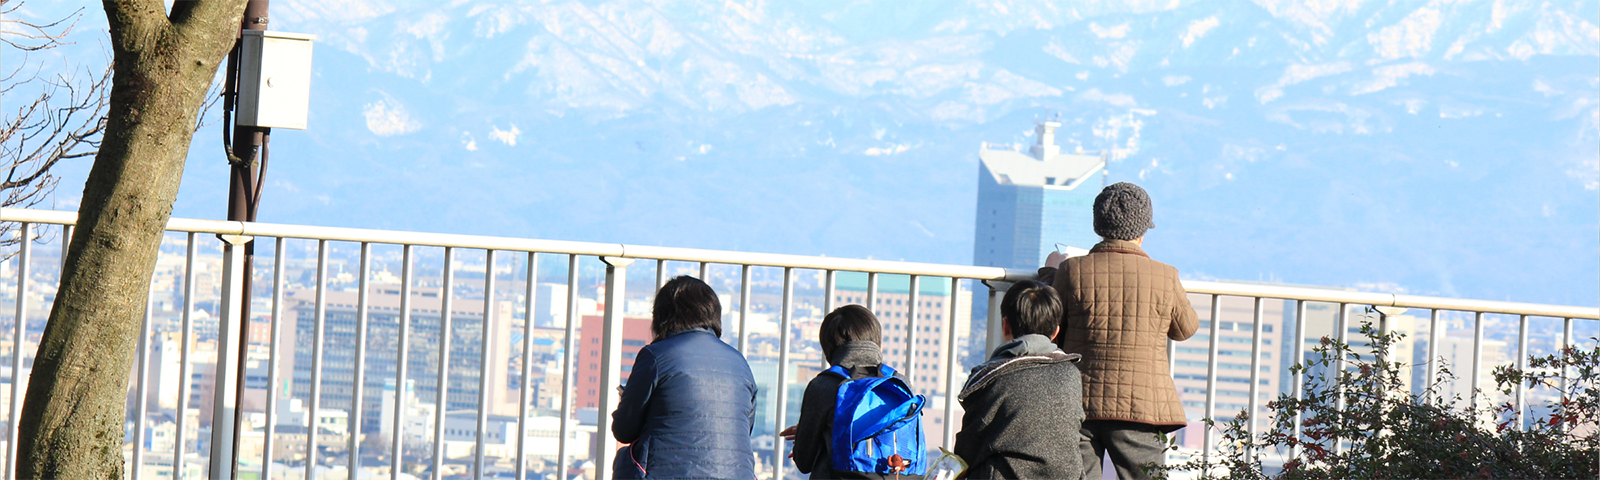 4人の子どもが山を見ている写真